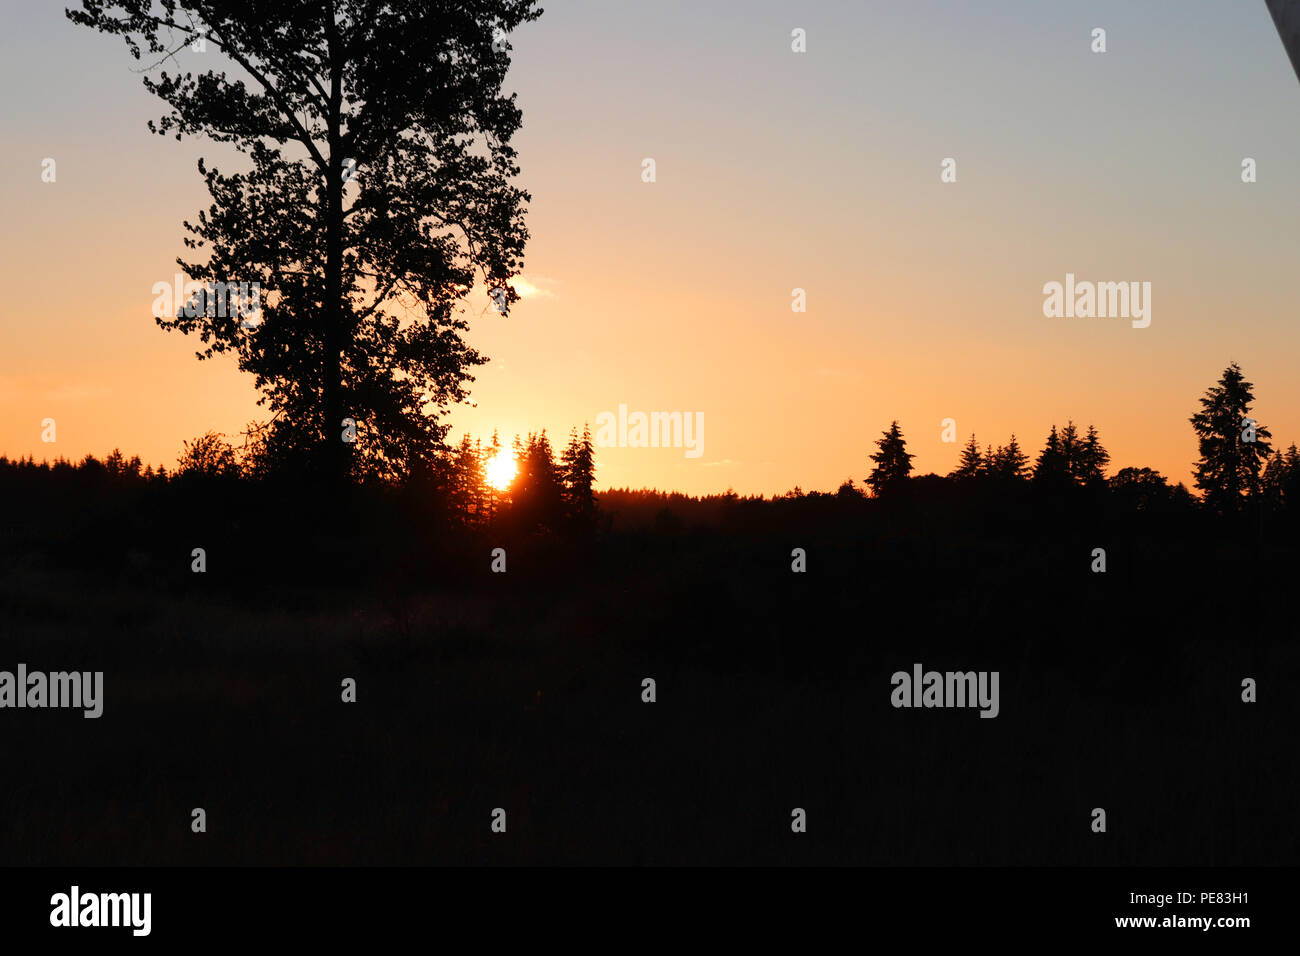 Sunset in Yelm, Washington Stock Photo